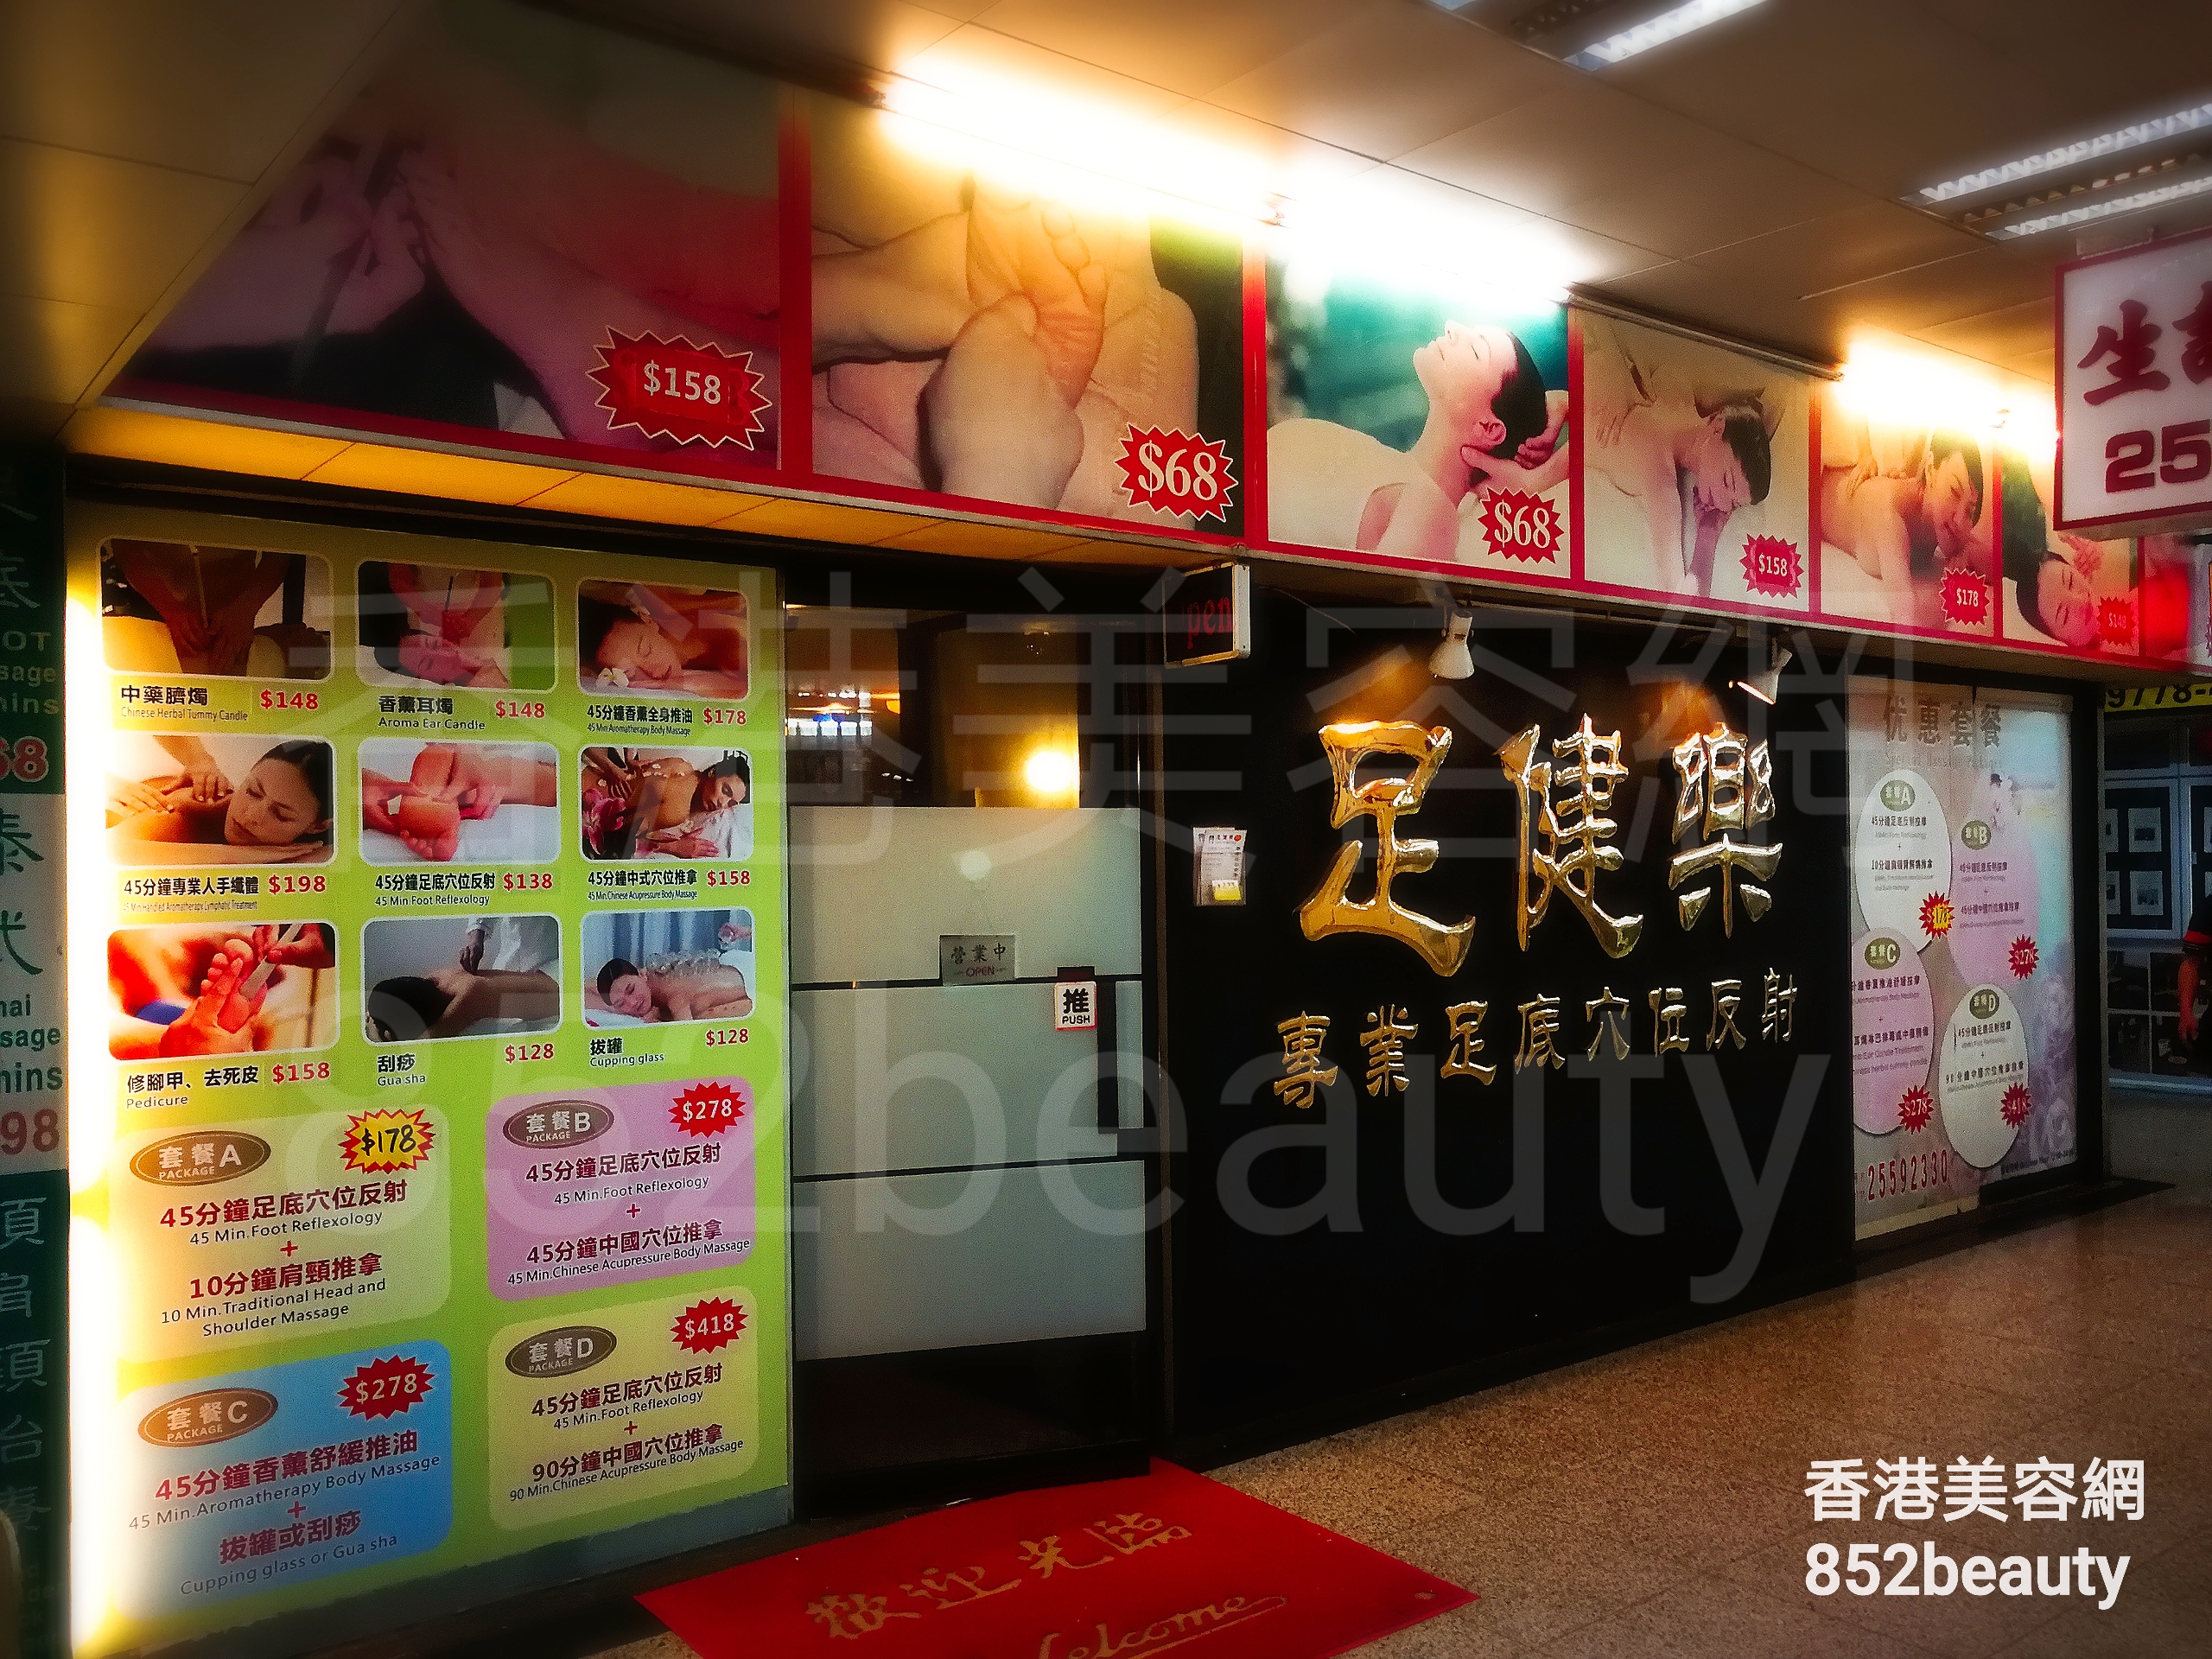 香港美容網 Hong Kong Beauty Salon 美容院 / 美容師: 足健樂